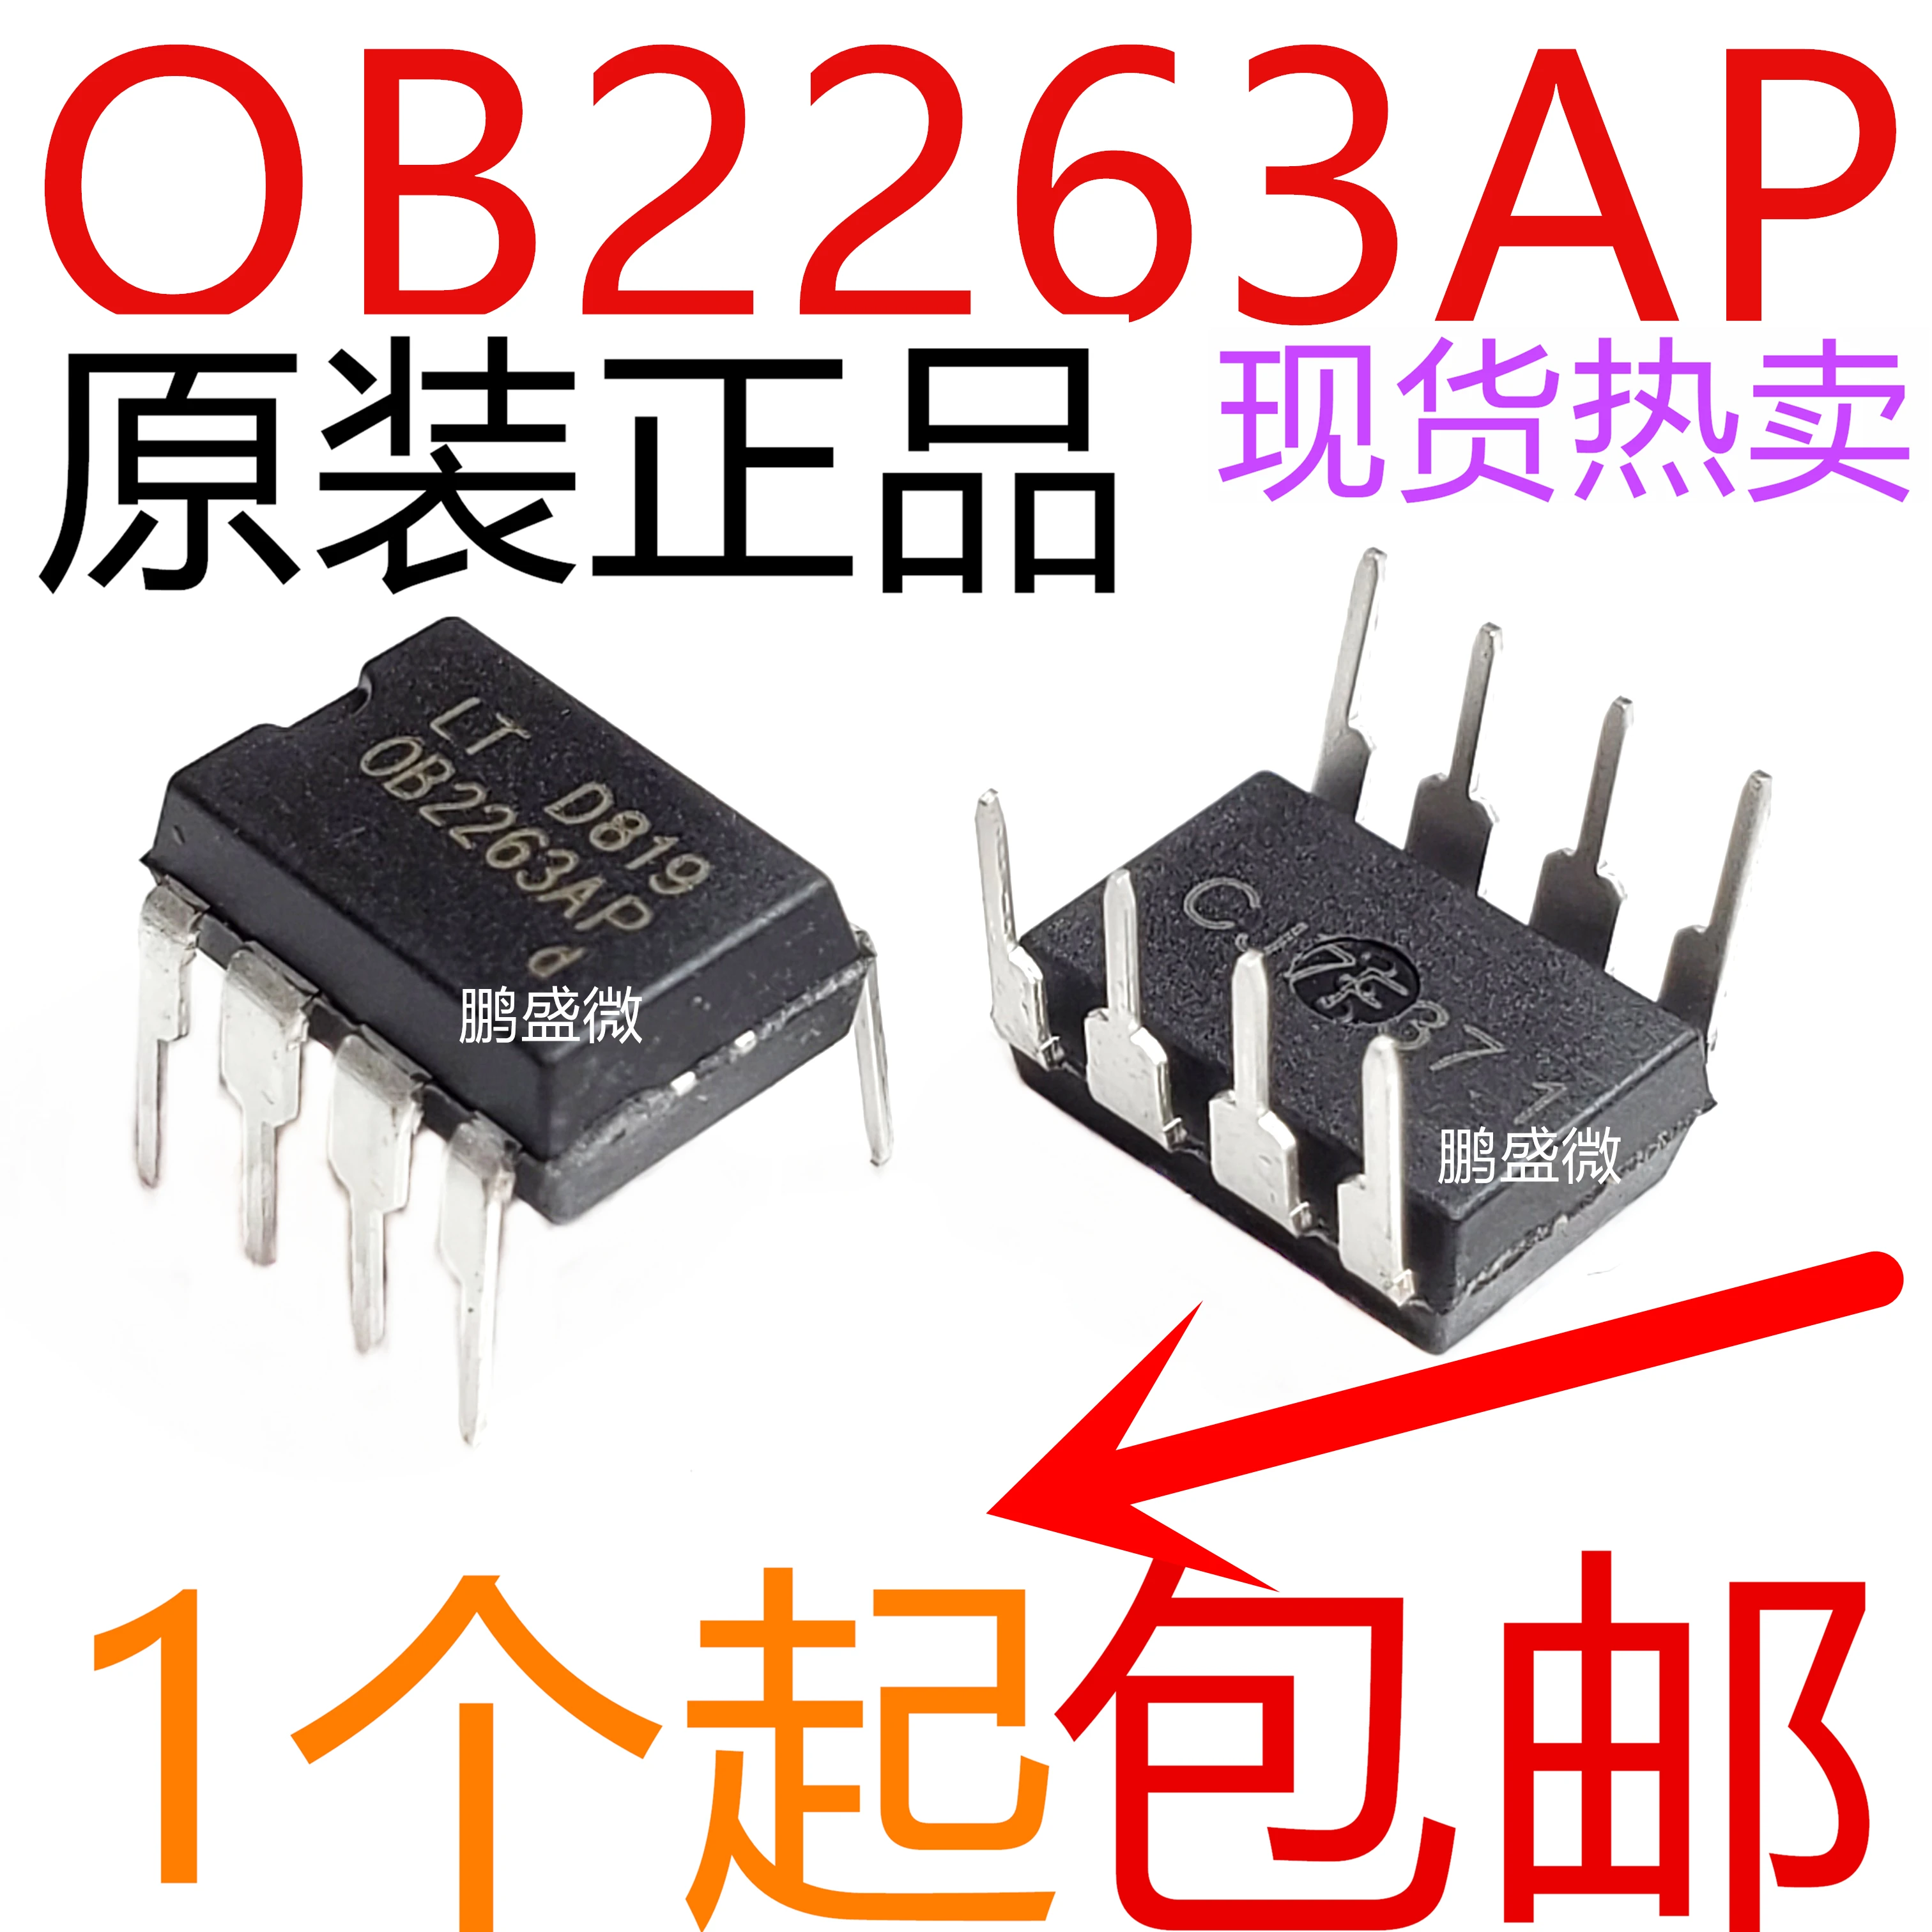 

Refurbished OB2263AP DIP-8 in-line 50PCS -1lot